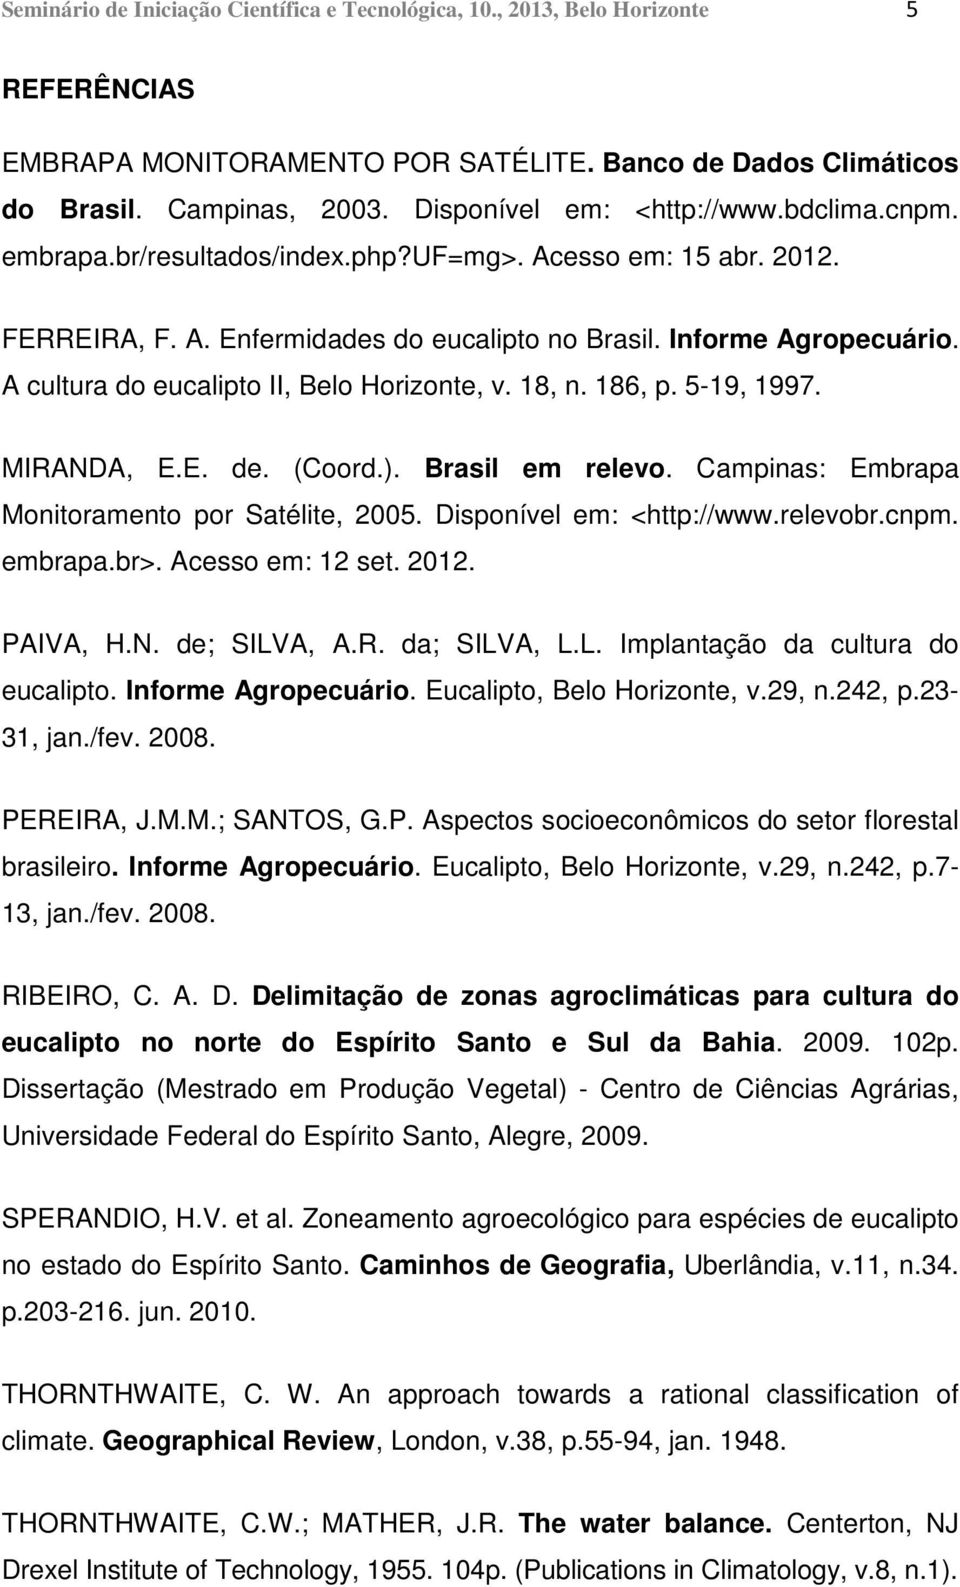 A cultura do eucalipto II, Belo Horizonte, v. 18, n. 186, p. 5-19, 1997. MIRANDA, E.E. de. (Coord.). Brasil em relevo. Campinas: Embrapa Monitoramento por Satélite, 2005. Disponível em: <http://www.